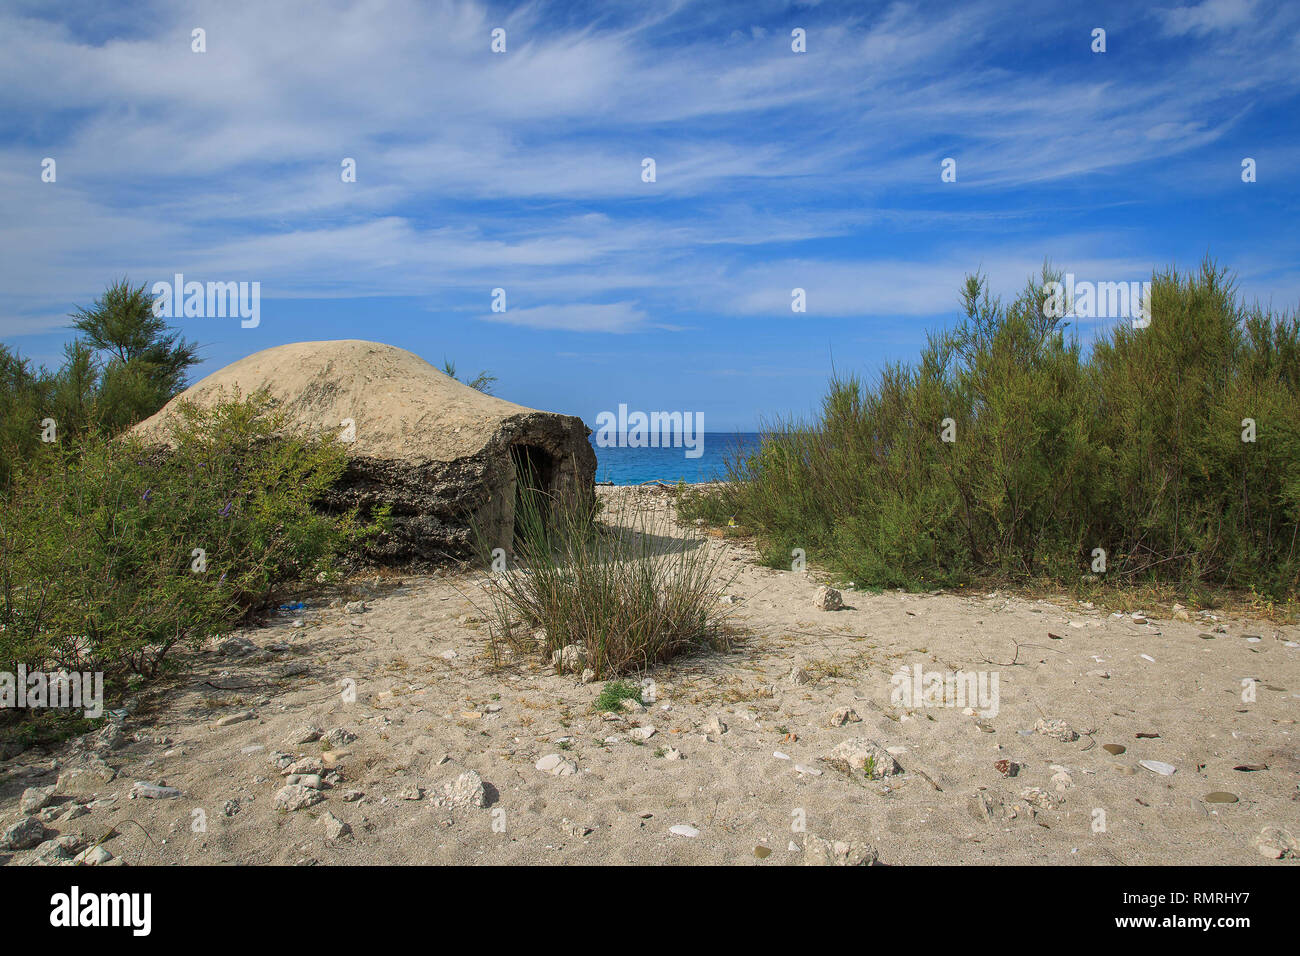 Bunker in Borsh's Beach. Borsh è un villaggio marittimo, nella Riviera albanese e la spiaggia è la più grande nel mare Ionio, 7 km. Foto Stock